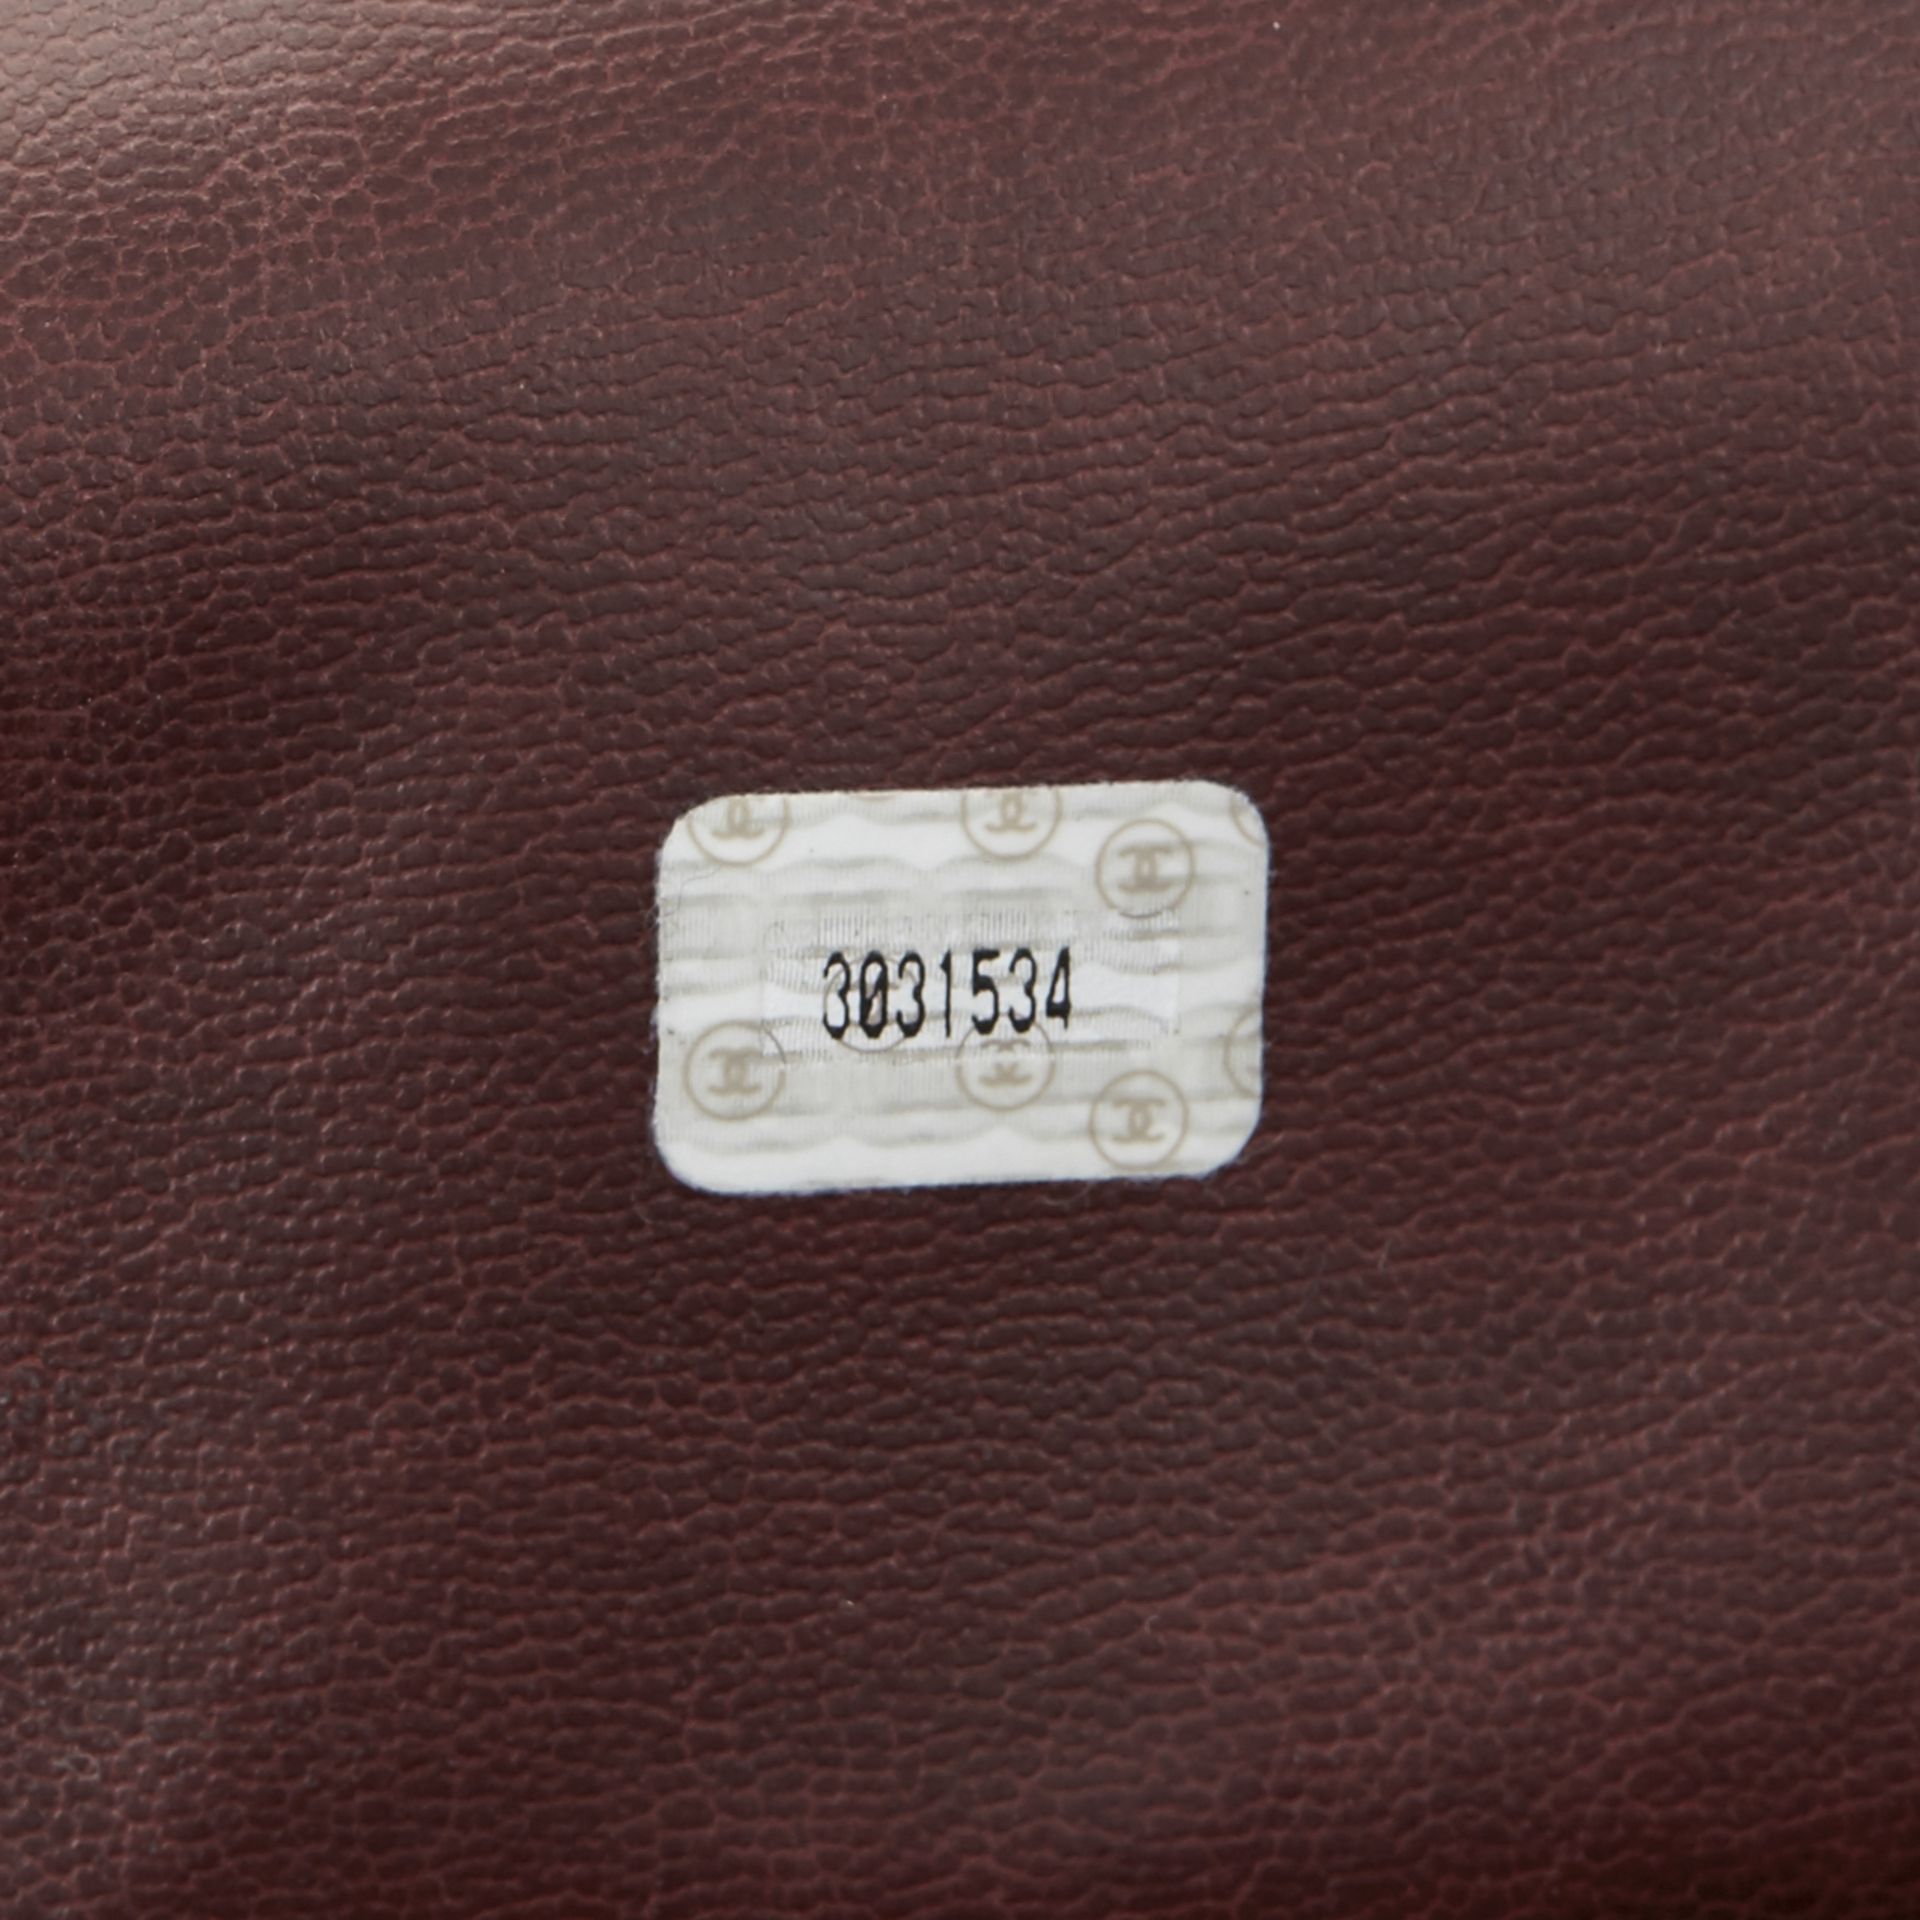 Chanel Plum Quilted Lambskin Vintage Timeless Shoulder Bag - Image 18 of 19